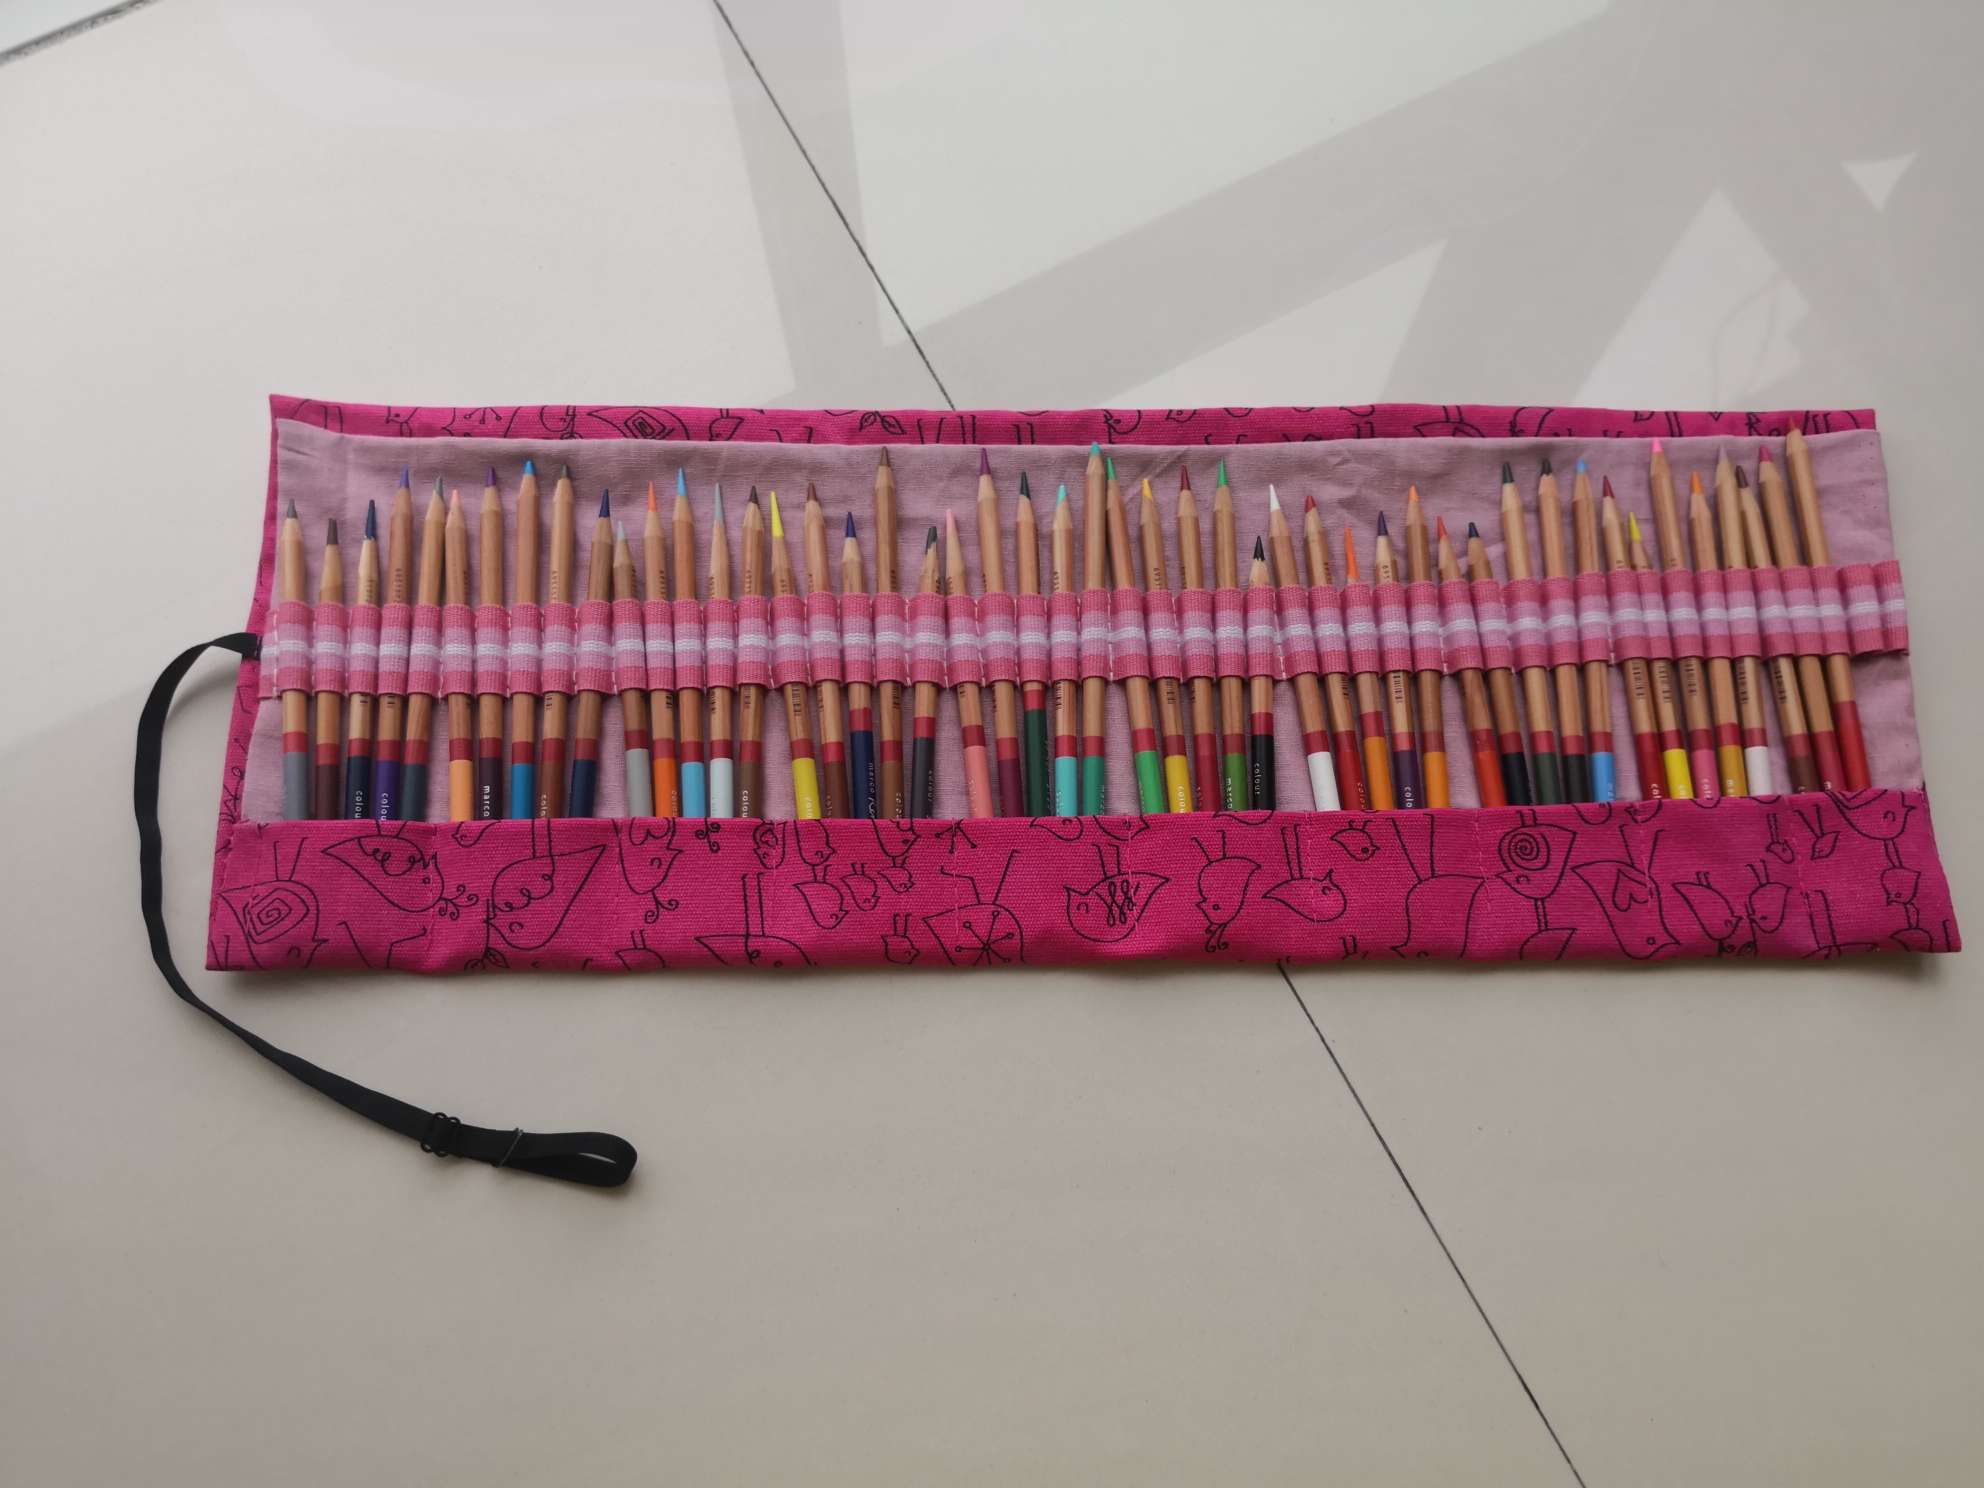 这是50支铅笔的笔袋